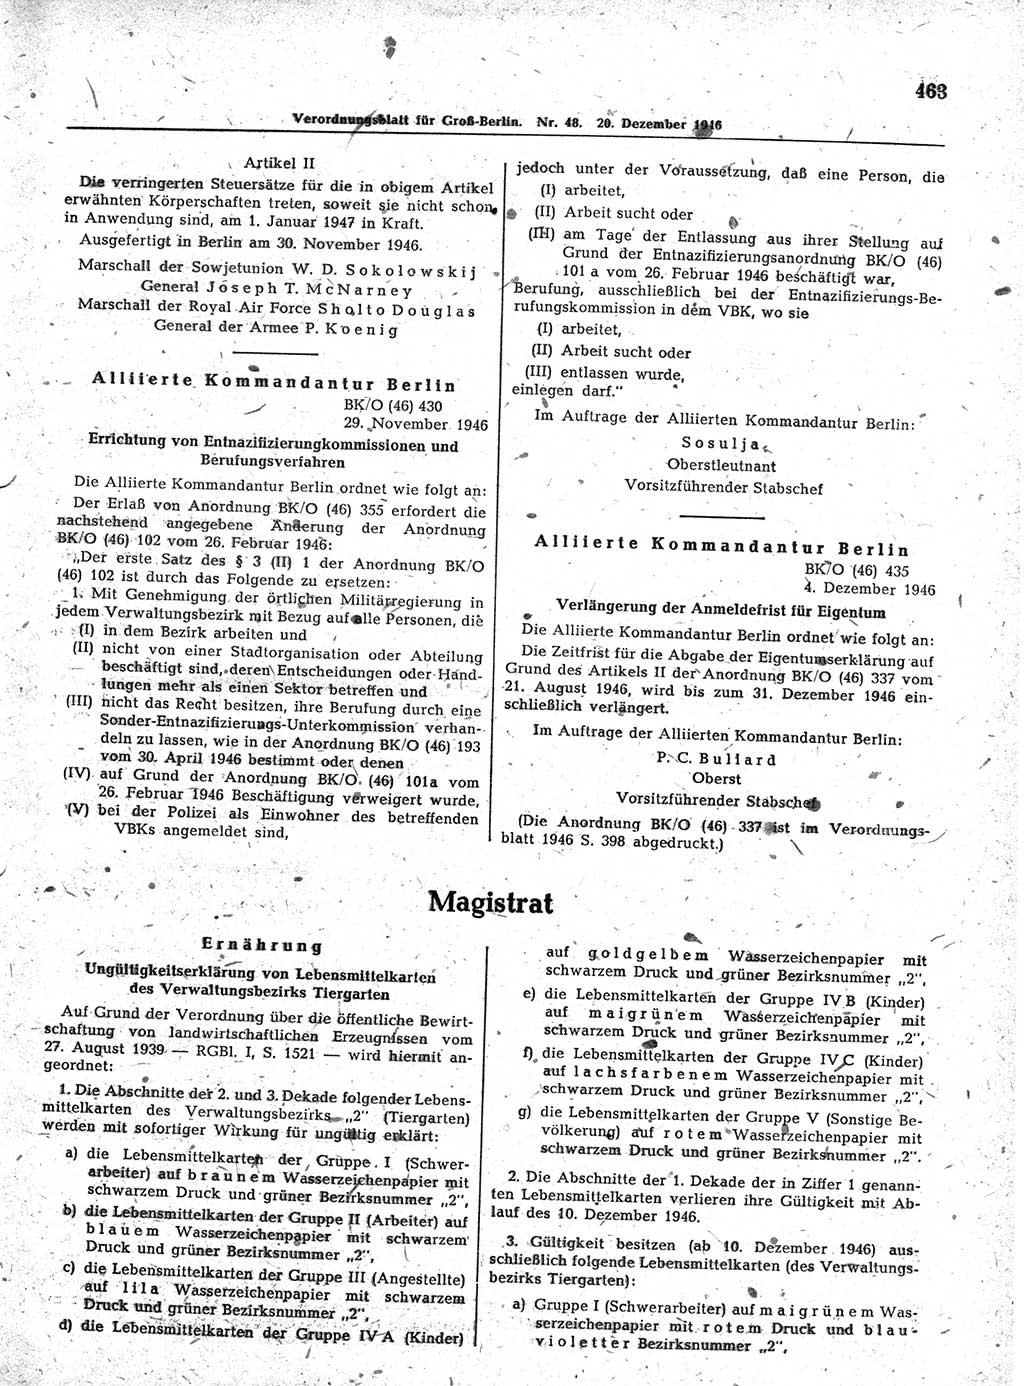 Verordnungsblatt (VOBl.) der Stadt Berlin, für Groß-Berlin 1946, Seite 463 (VOBl. Bln. 1946, S. 463)